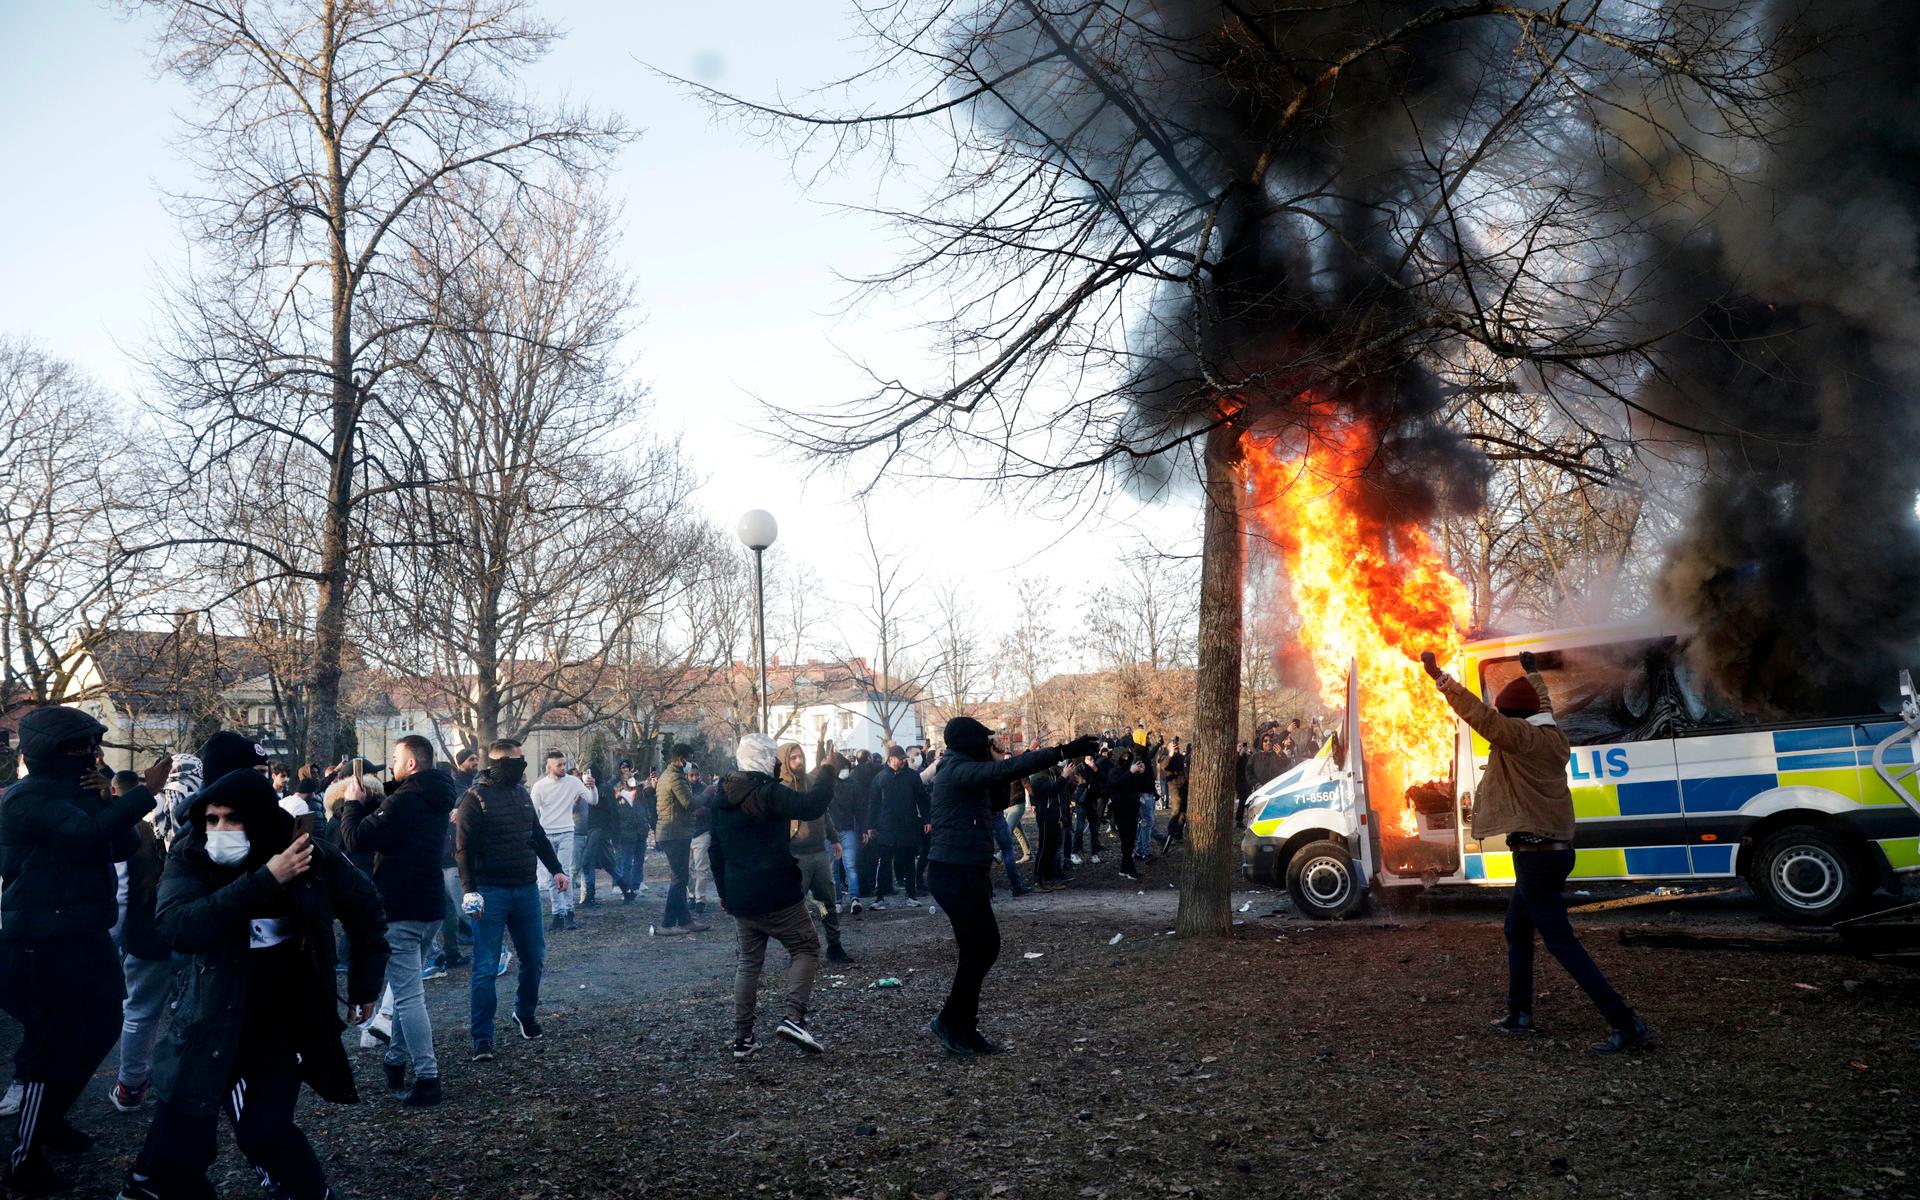 Motdemonstranter har satt eld på en polisbuss i Sveaparken i Örebro, där Rasmus Paludan, partiledare för det danska högerextrema partiet Stram kurs, har fått tillstånd för en sammankomst på långfredagen. Foto: Kicki Nilsson / TT / kod 11380